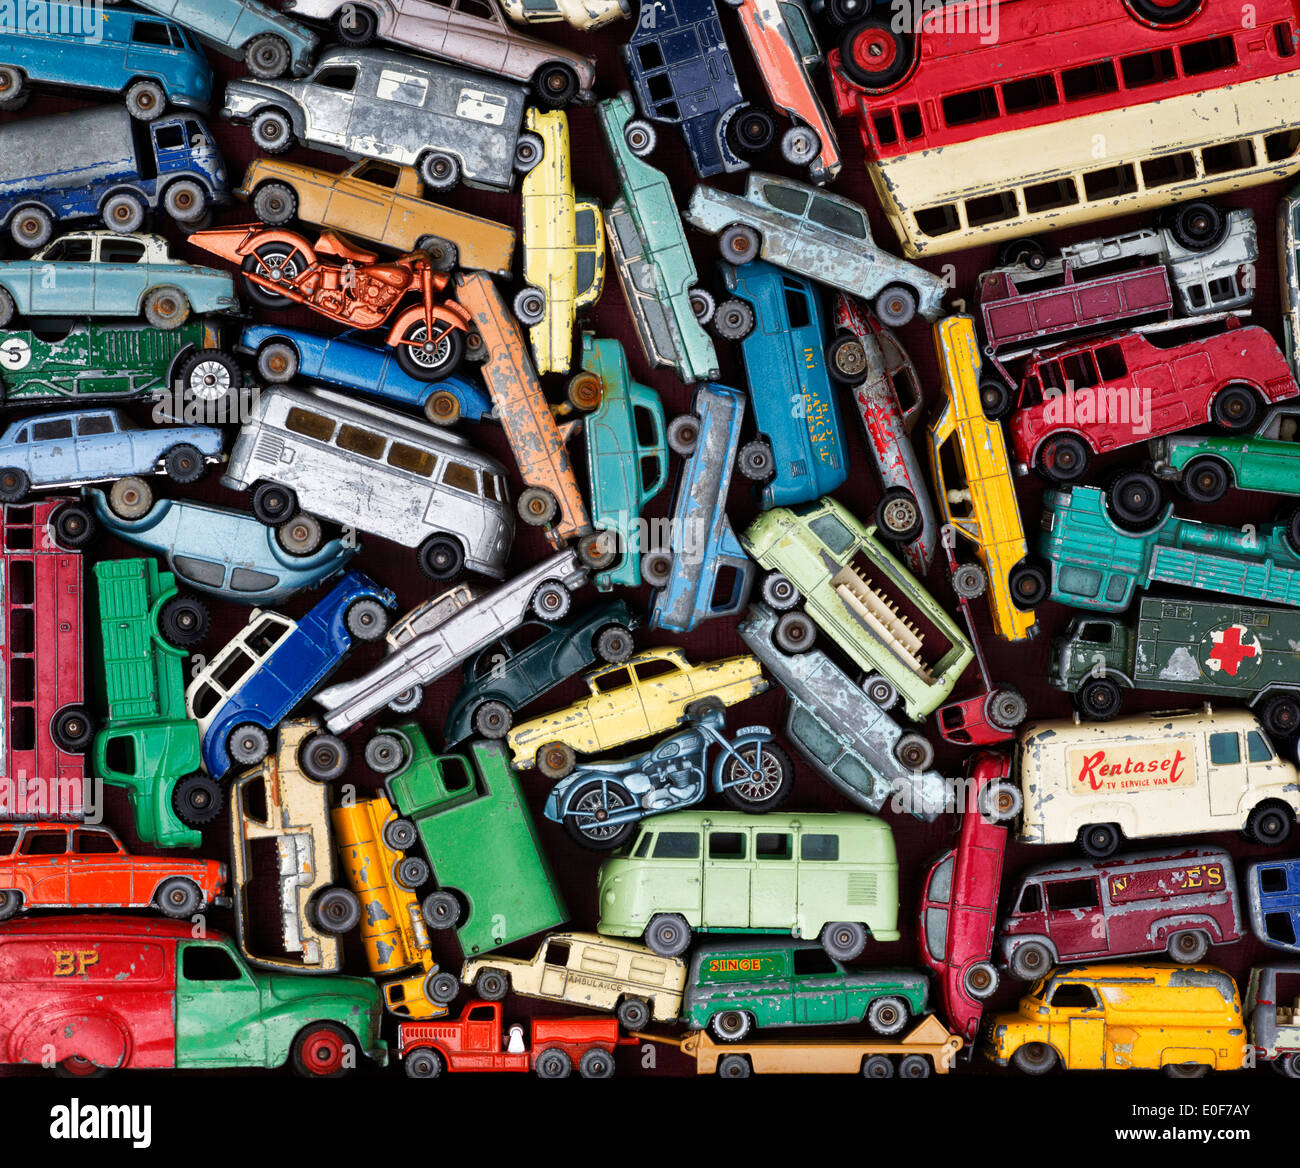 Ancien Dinky Matchbox Lesney playworn, petites voitures, bus, motos pattern Banque D'Images